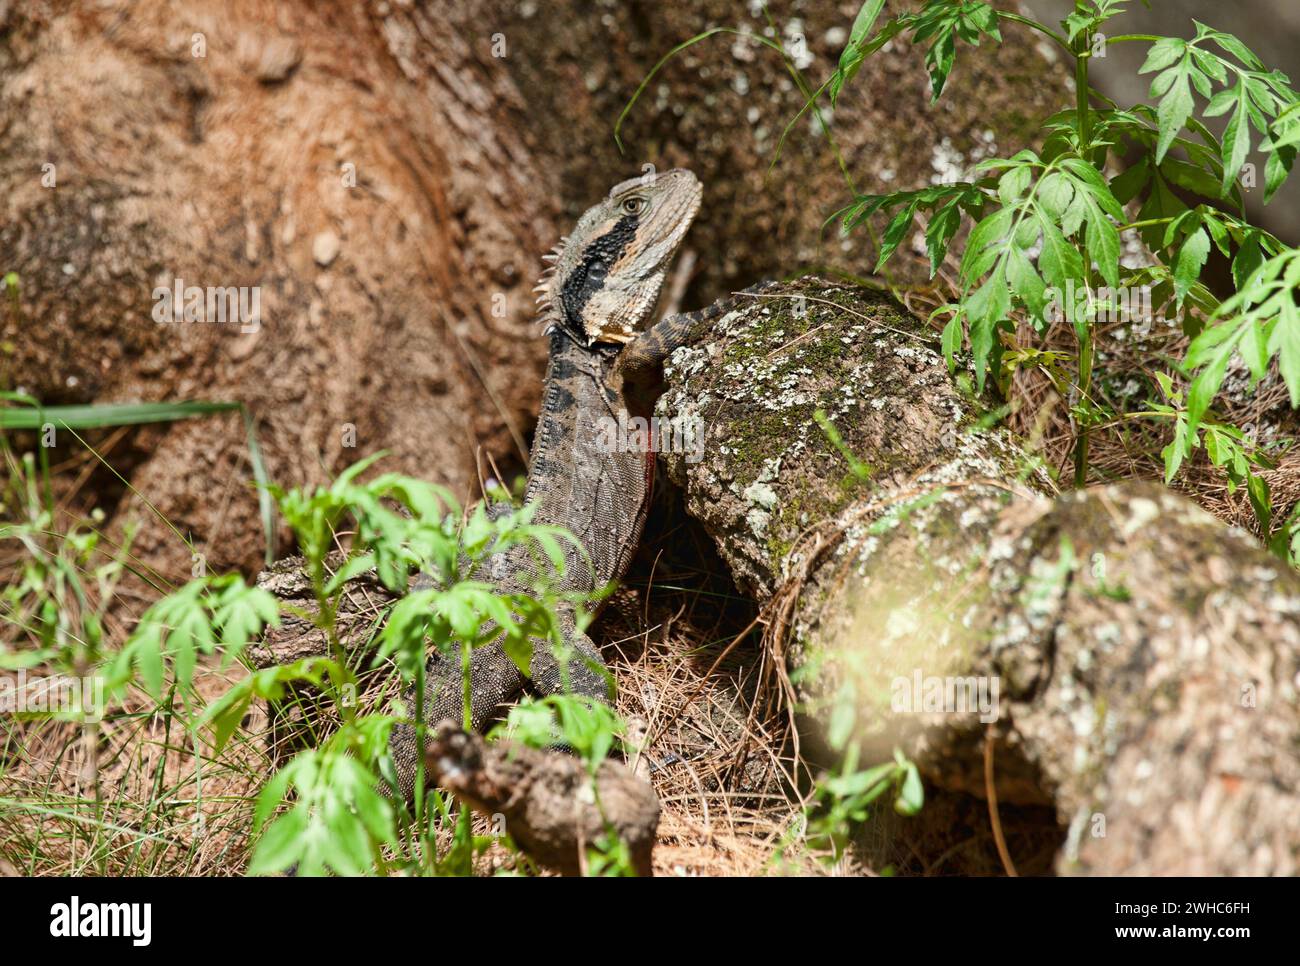 Eastern water dragon lizard Stock Photo